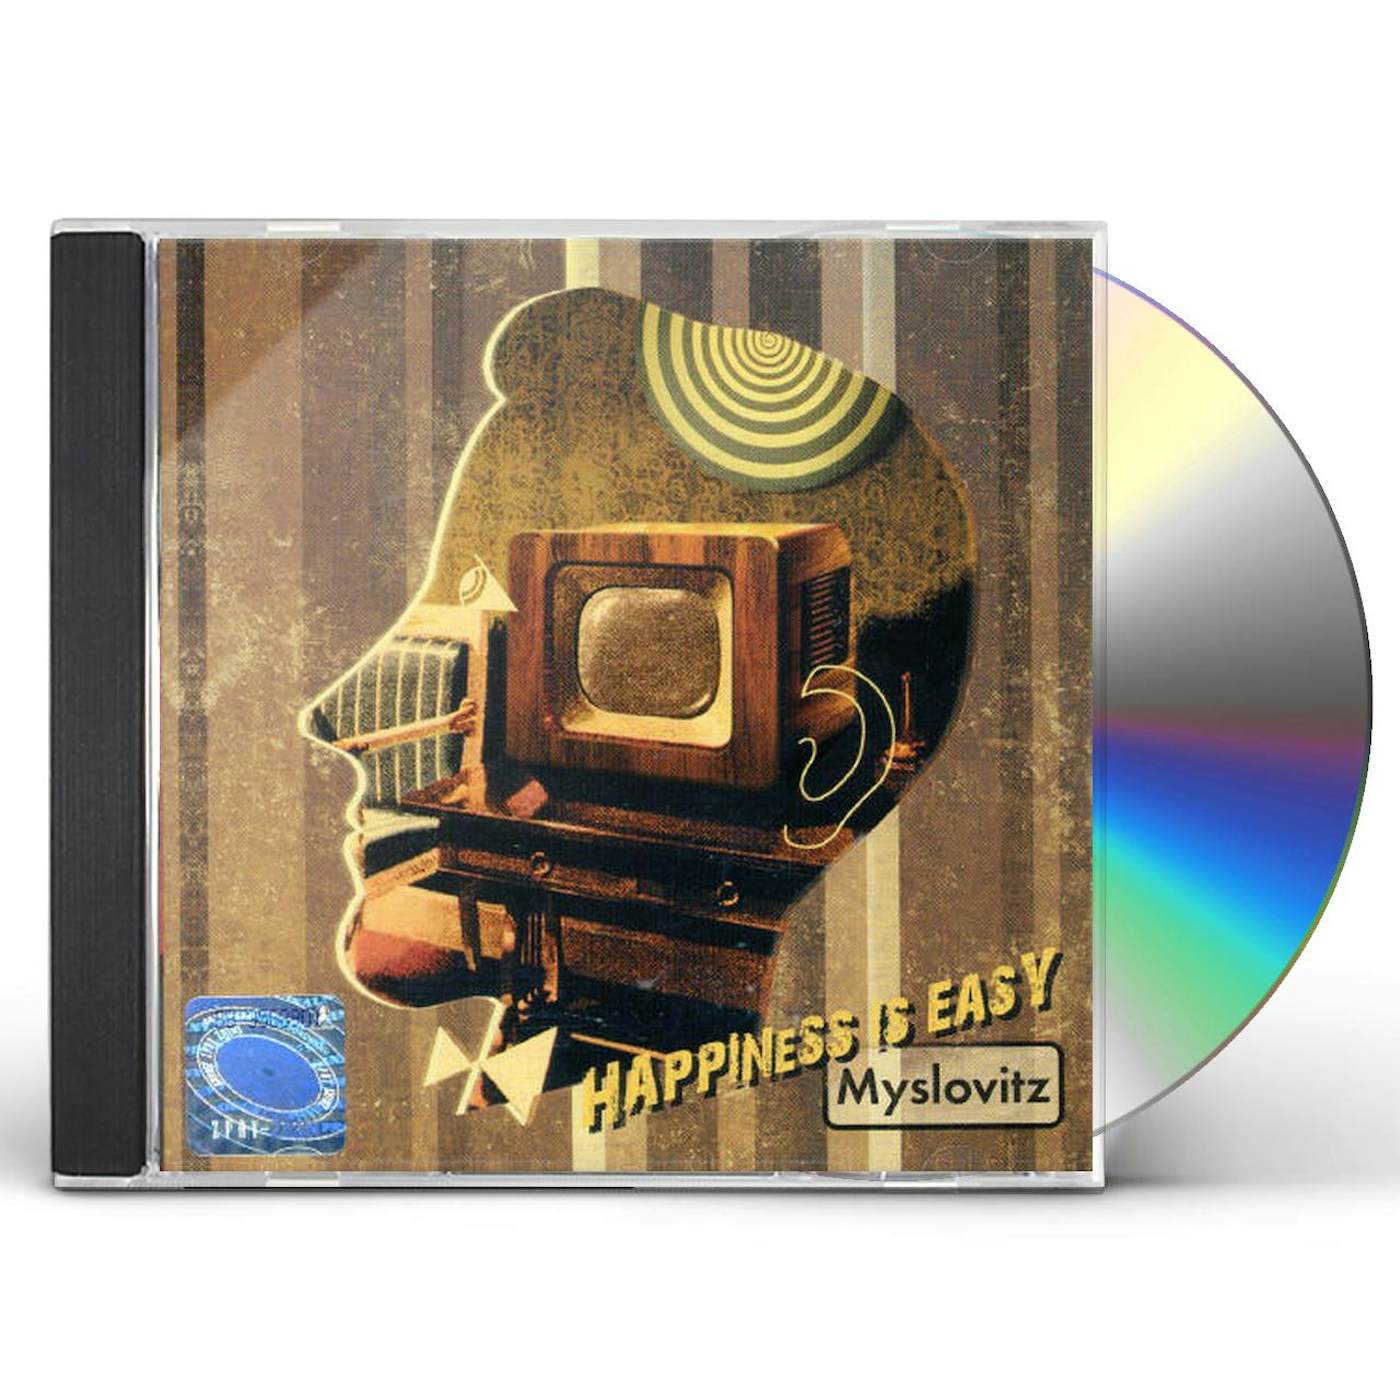 Myslovitz HAPPINES IS EASY CD